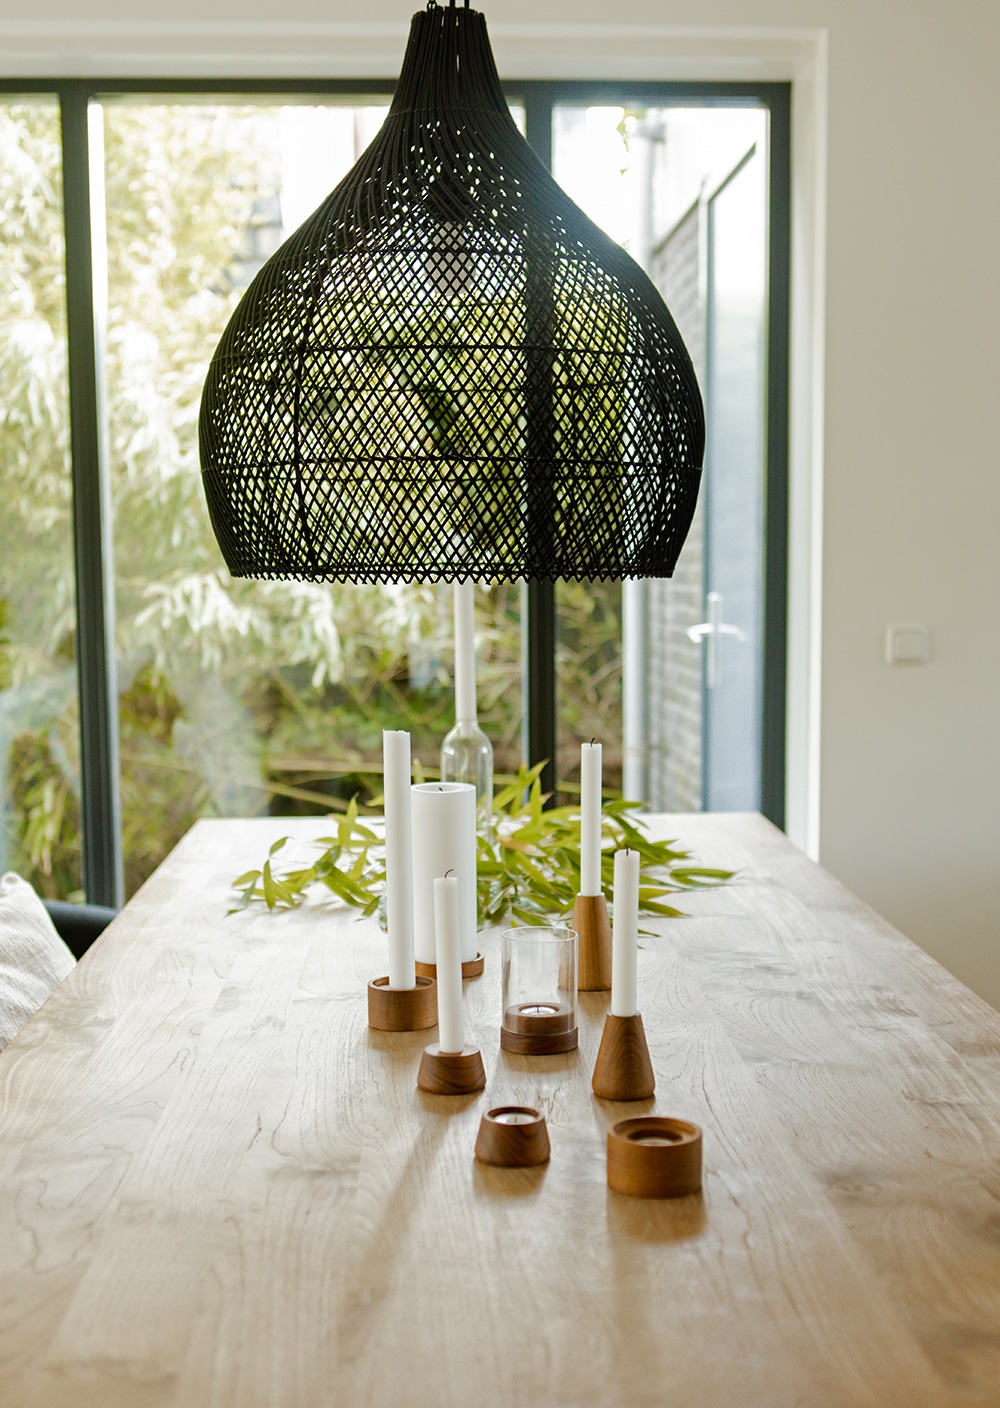 Eco design lampshade Original home